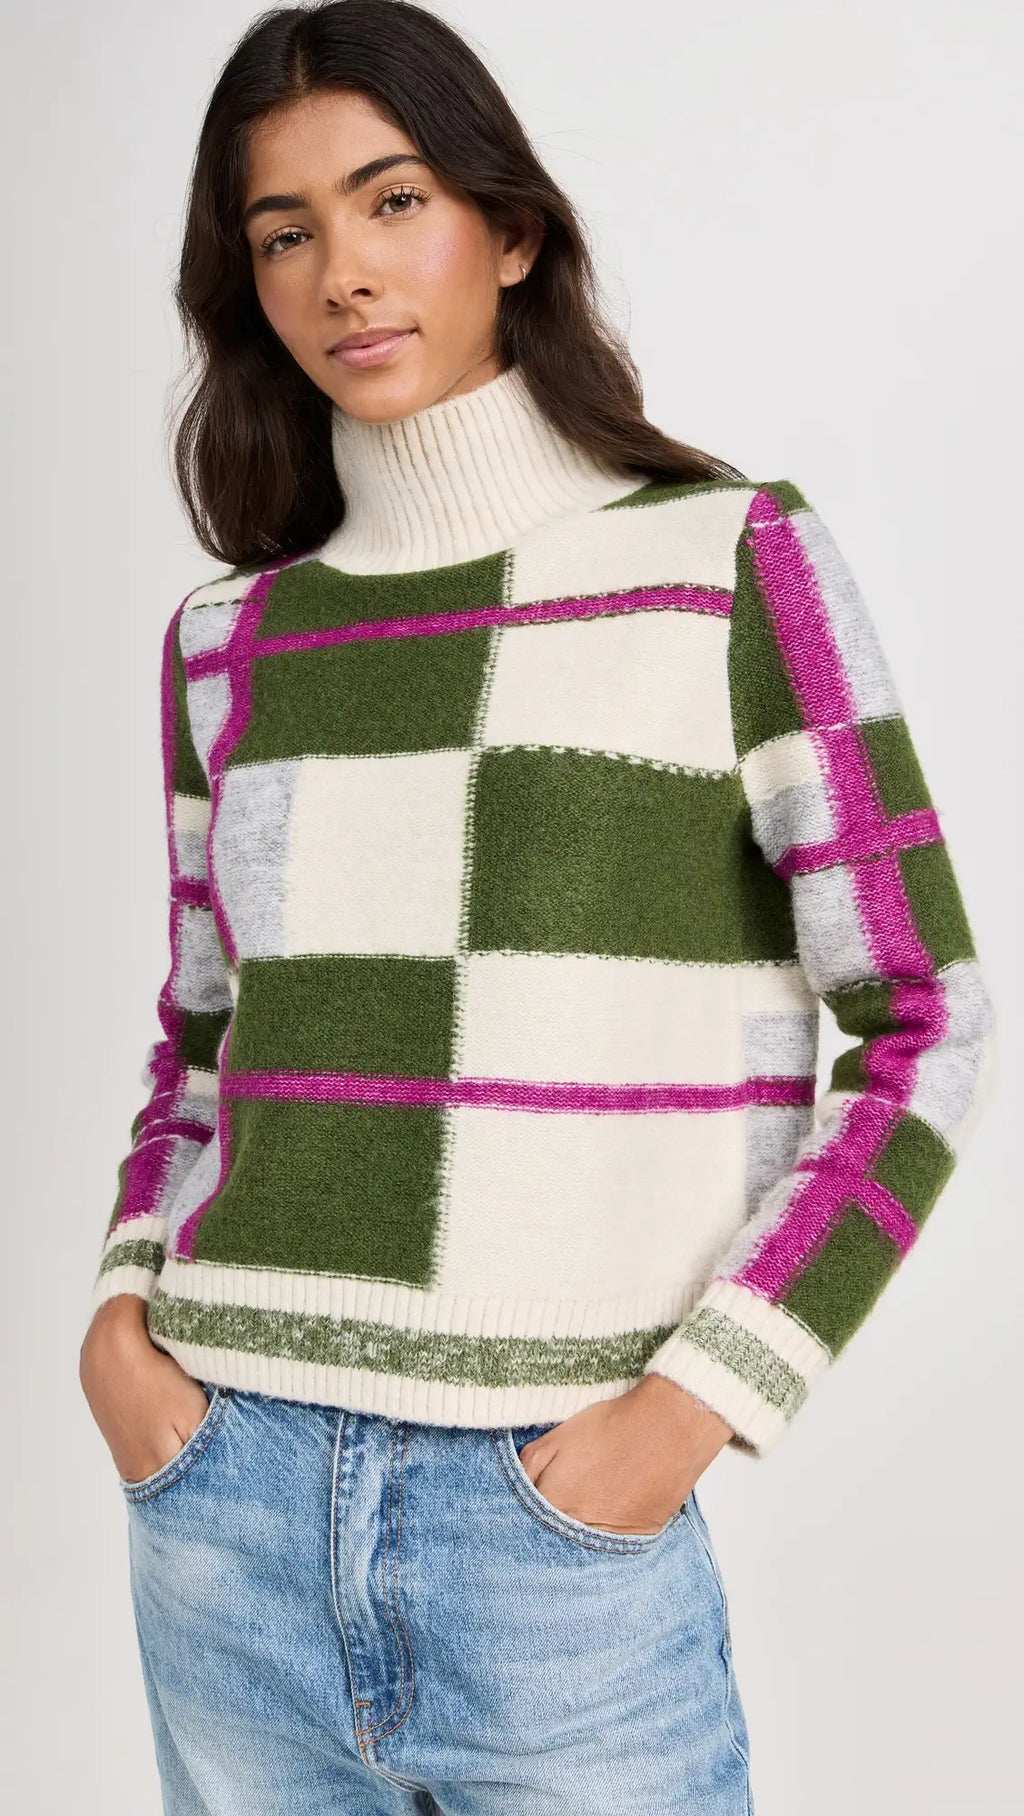 525 America Ria Sweater in Ecru Multi Plaid